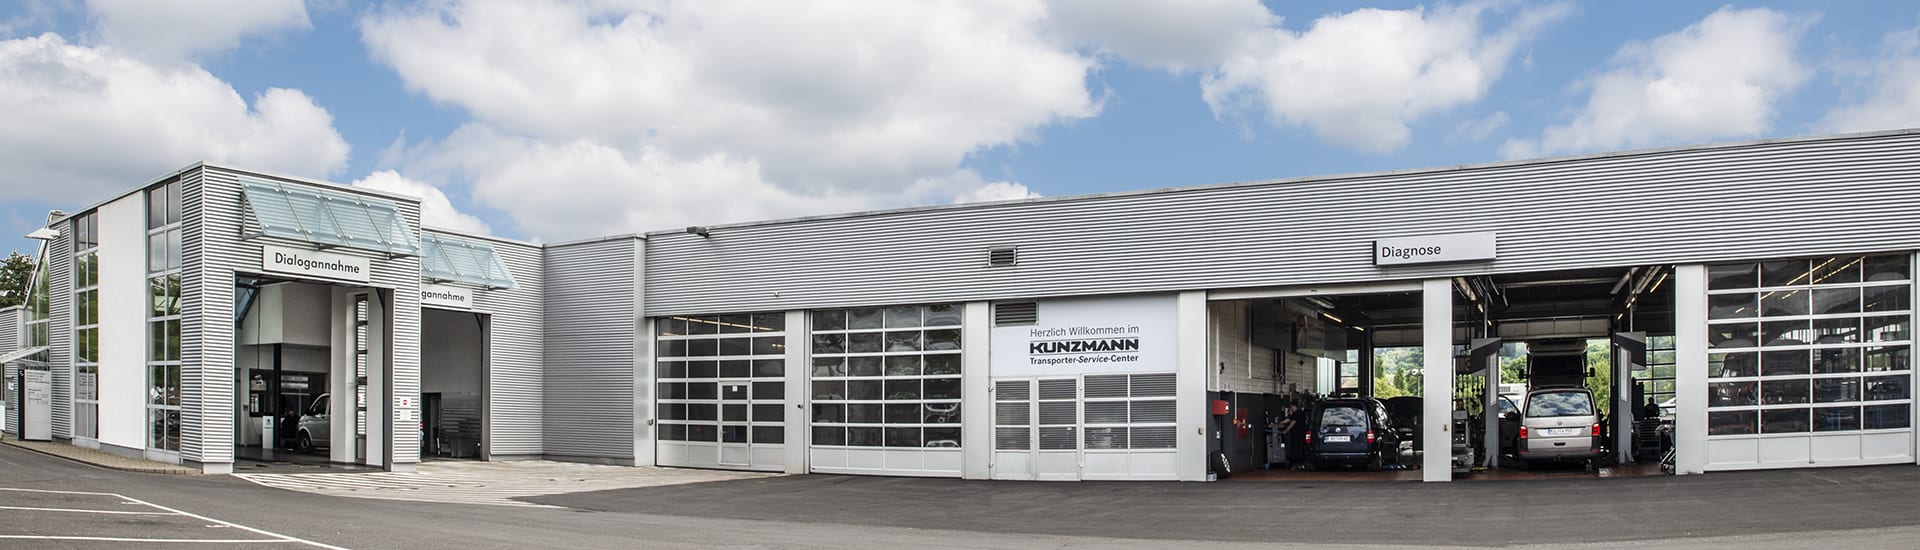 Klimaanlagenreinigung im Autohaus Kunzmann in Aschaffenburg-Nilkheim